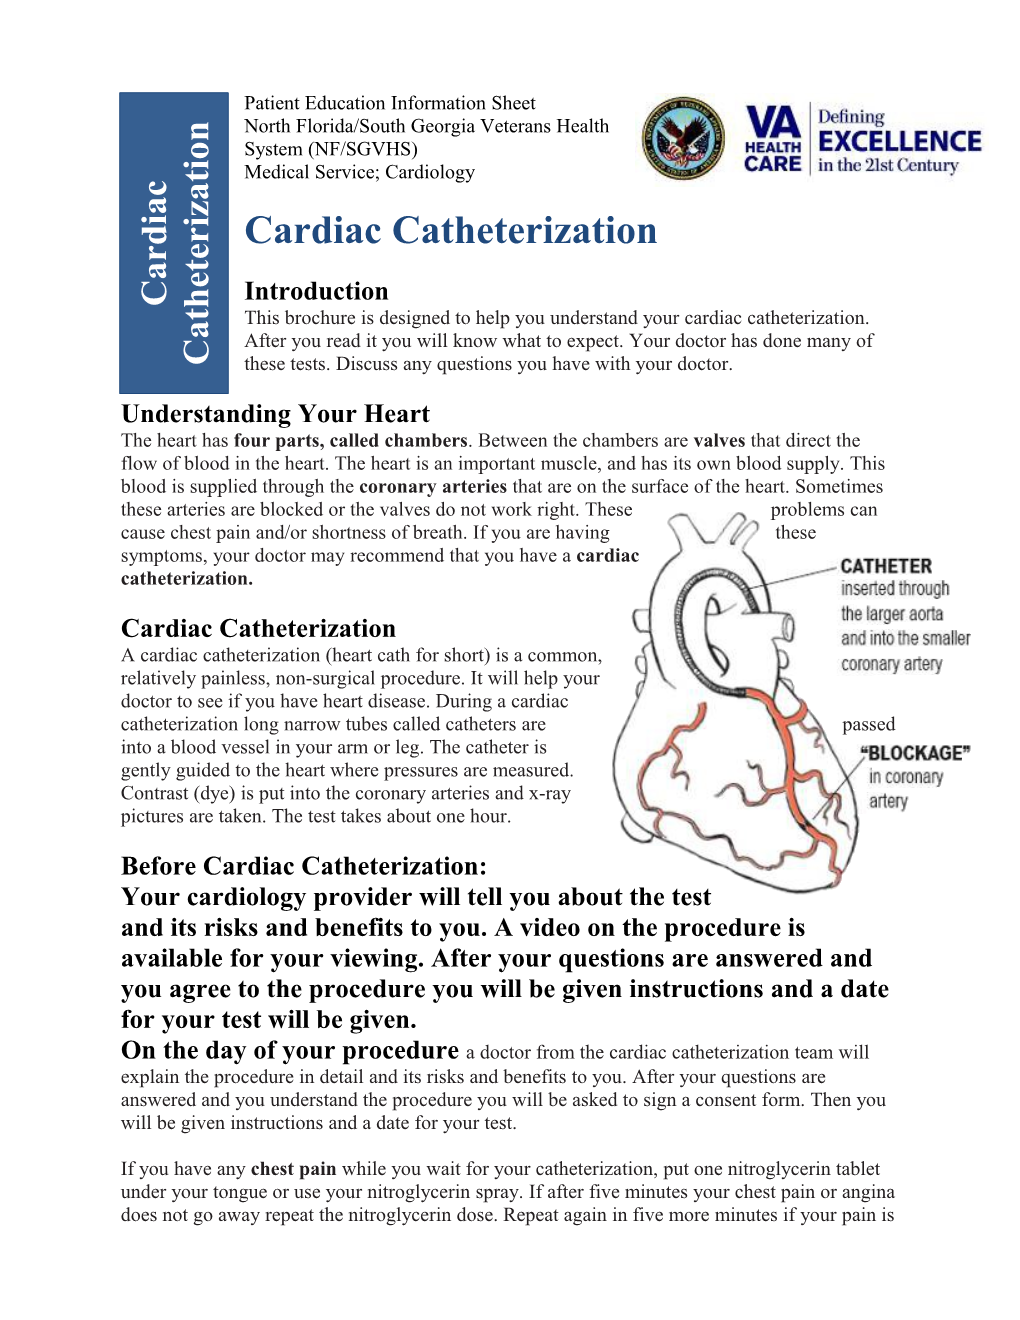 Your Cardiac Catheterization (NF/SGVHS)